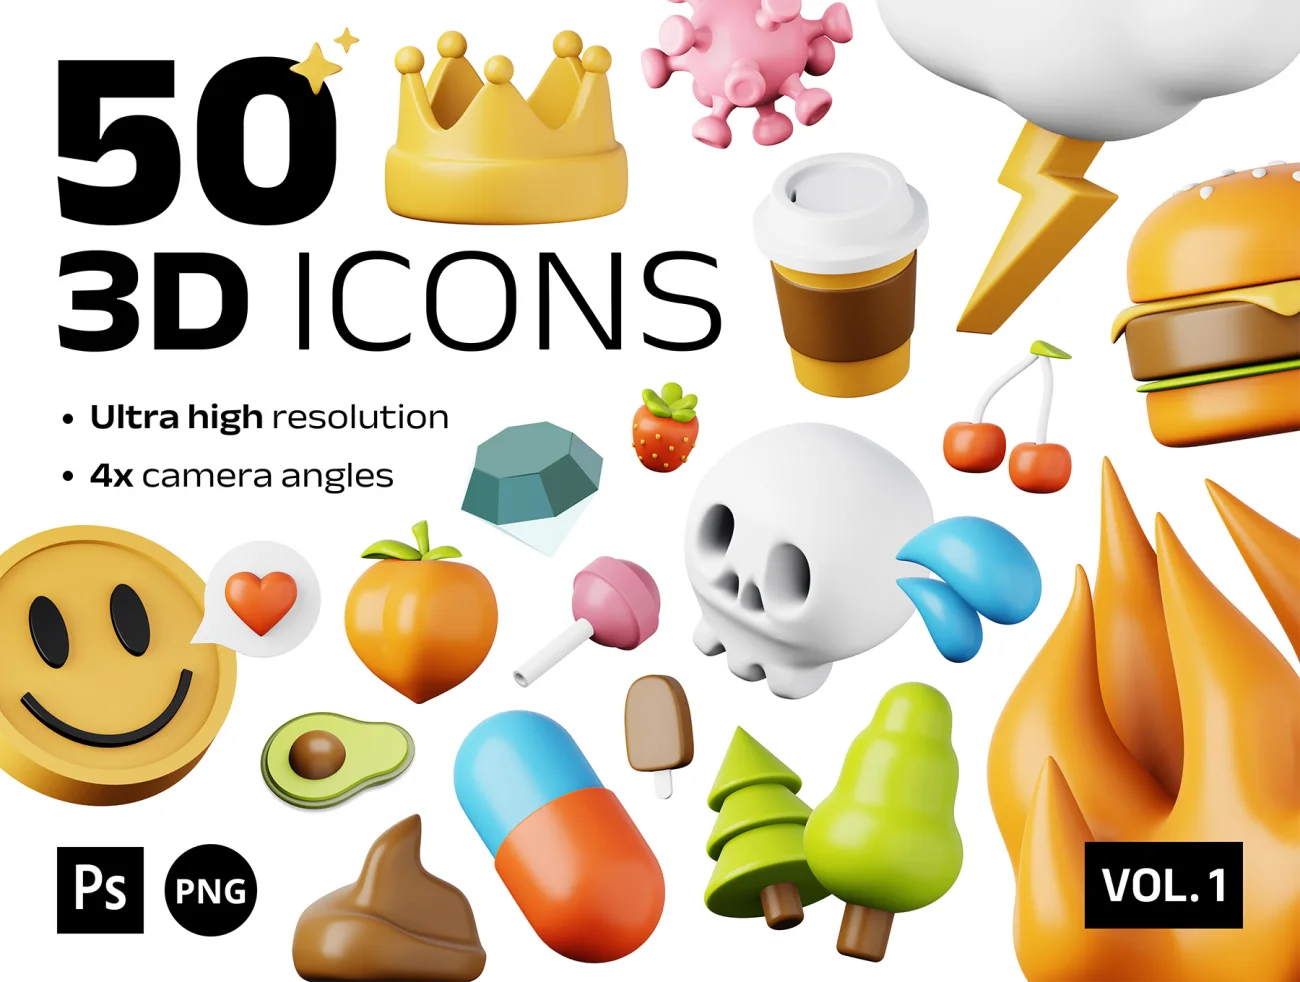 100款高质量表情天气食品3D图标模型素材 50 unique 3D icons .psd .figma .procreate插图1